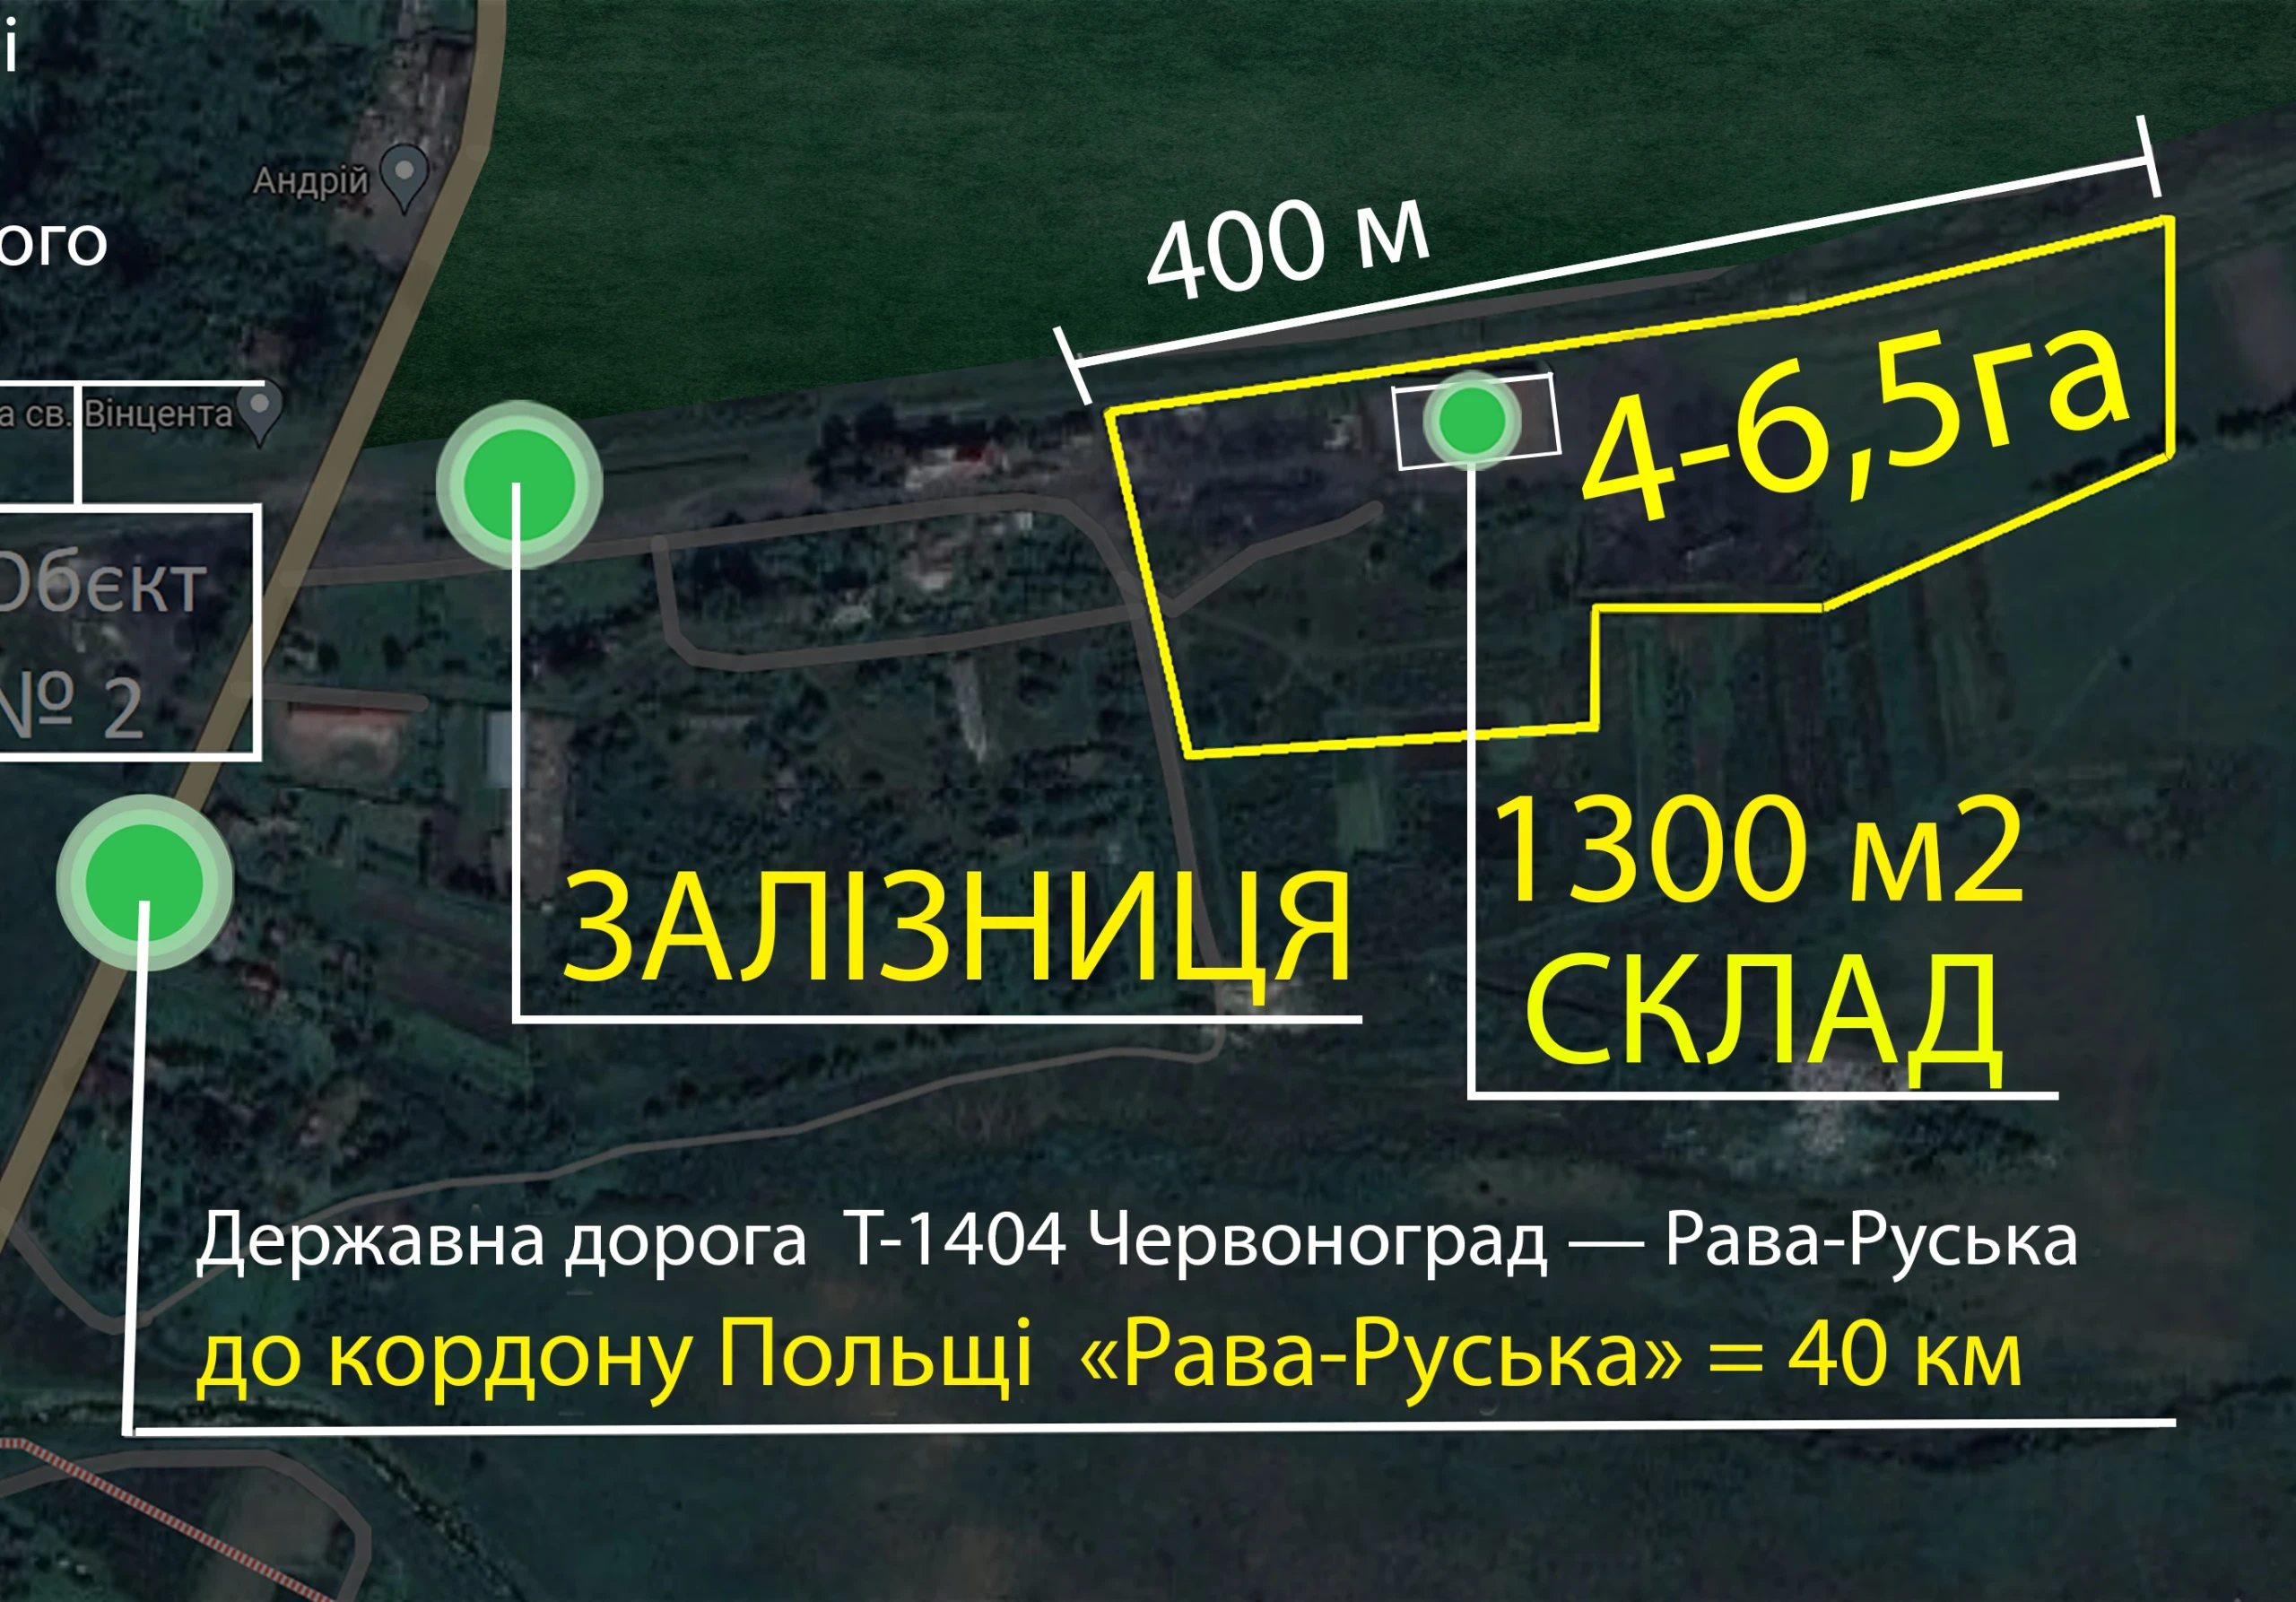 Промислова земельна ділянка 4га(6,5га) біля залізниці + Склад 1300 м2